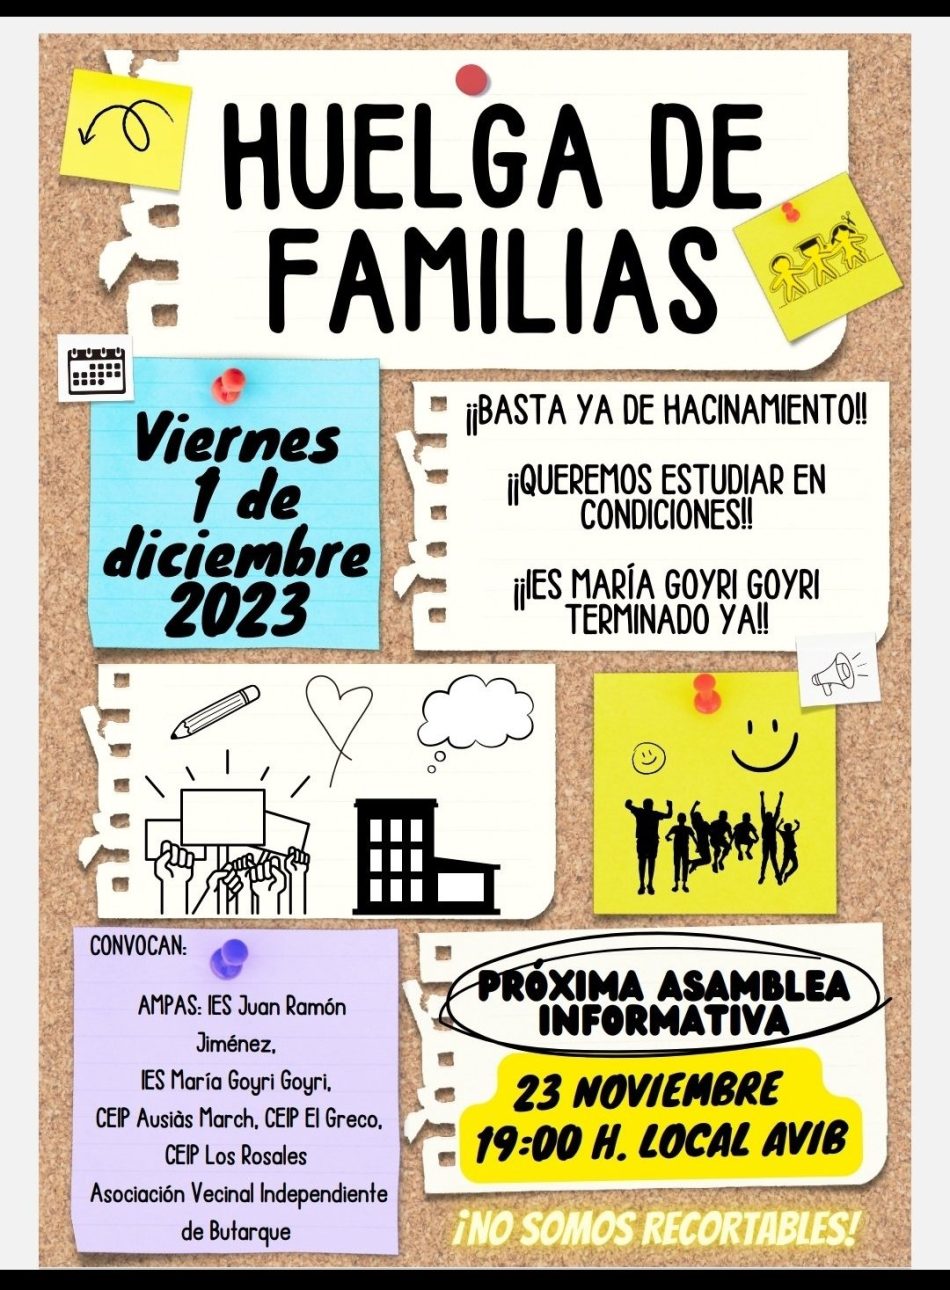 El barrio madrileño de Butarque llevará a cabo la primera huelga educativa de enseñanza secundaria convocada por familias